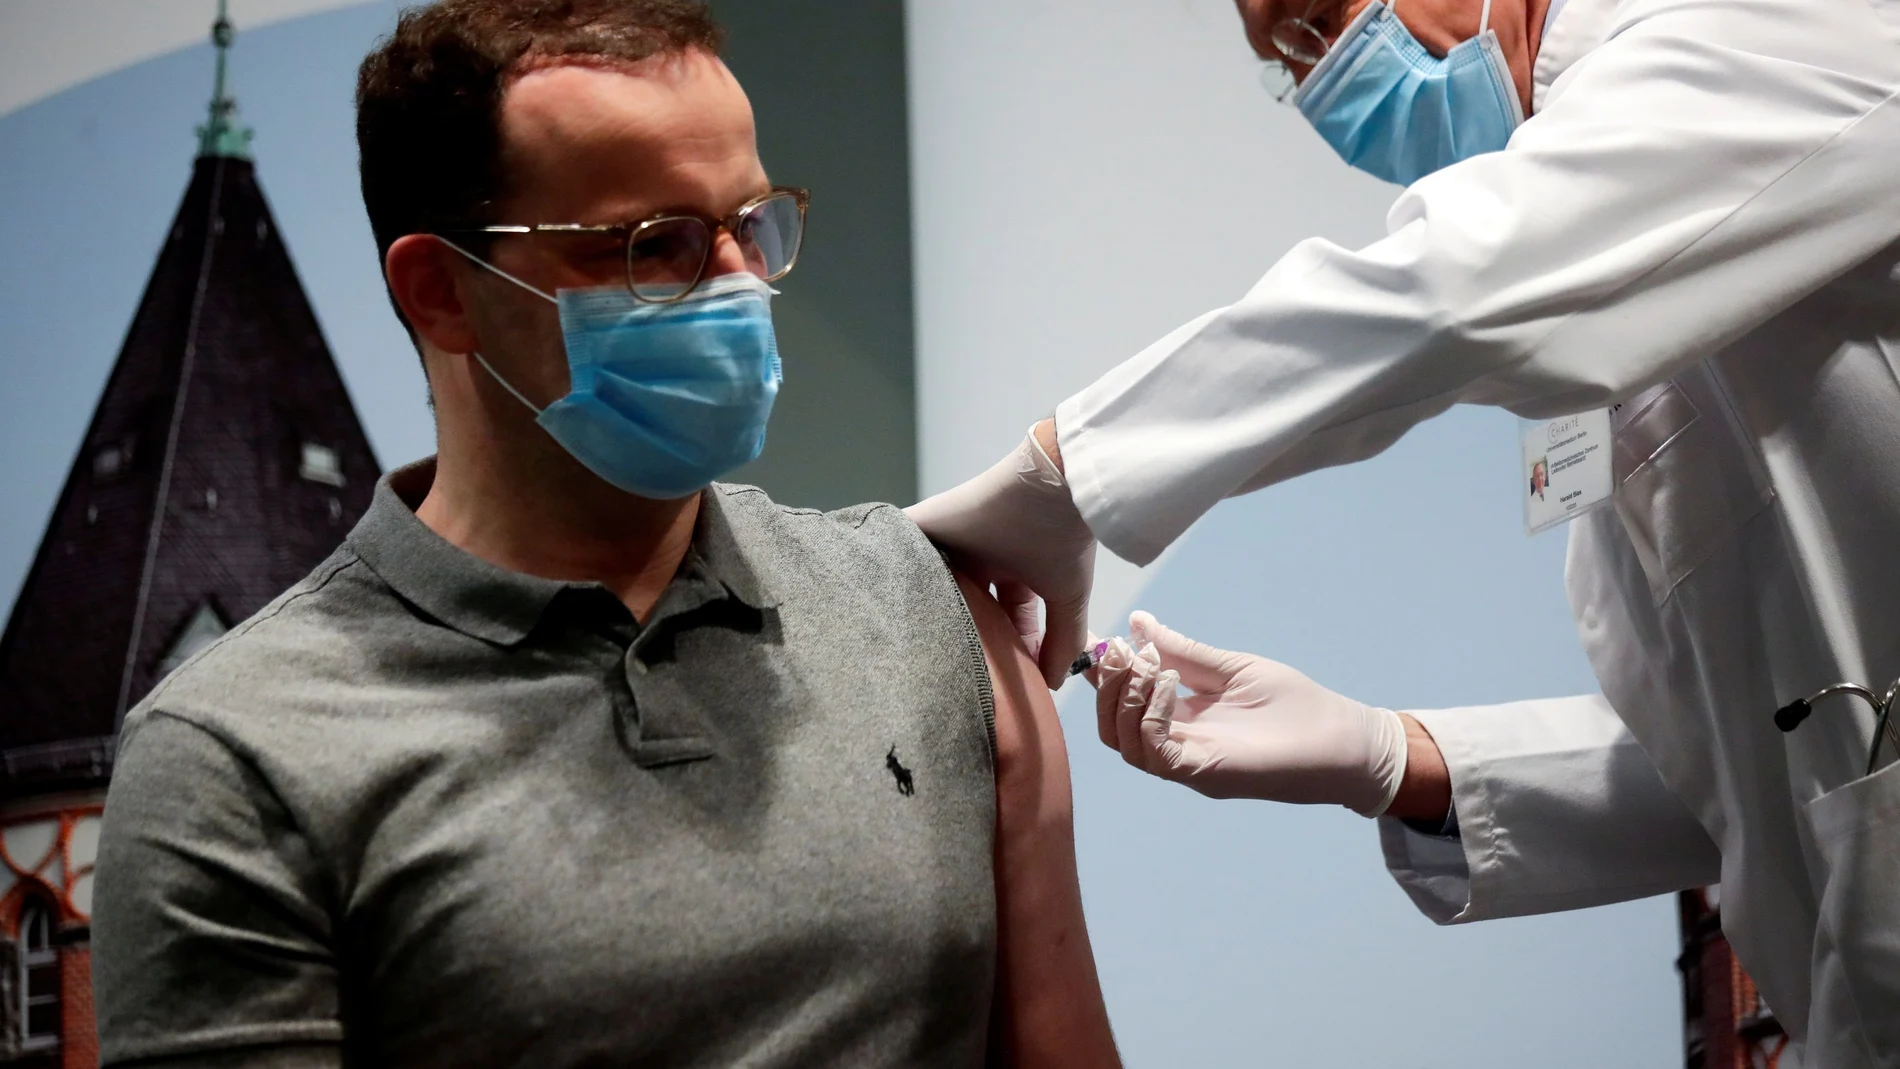 El ministro de Sanidad alemán, Jens Spahn, se vacunó de influenza la semana pasada